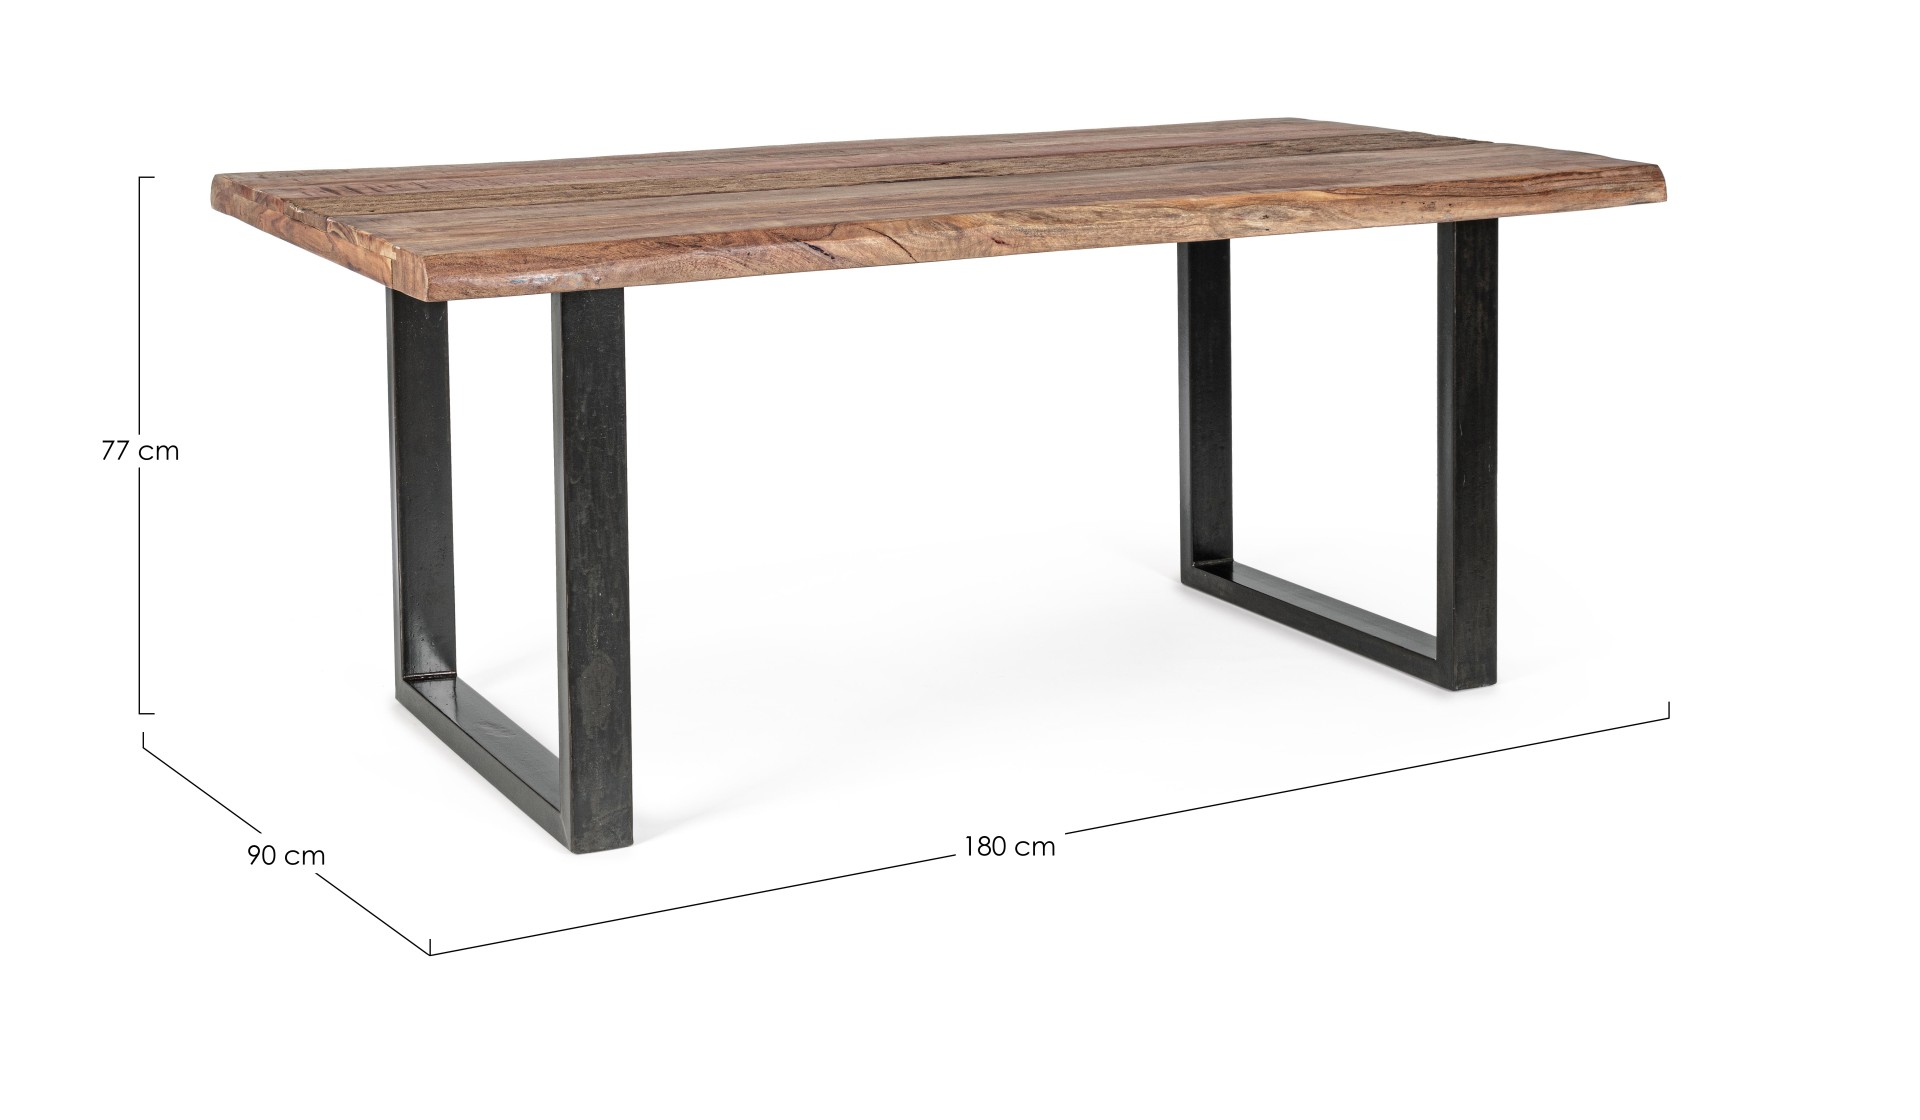 Der Esstisch Nottingham überzeugt mit seinem moderndem Design. Gefertigt wurde er aus Akazienholz, welches einen natürlichen Farbton besitzt. Das Gestell des Tisches ist aus Metall und ist in eine schwarze Farbe. Der Tisch besitzt eine Breite von 180 cm.